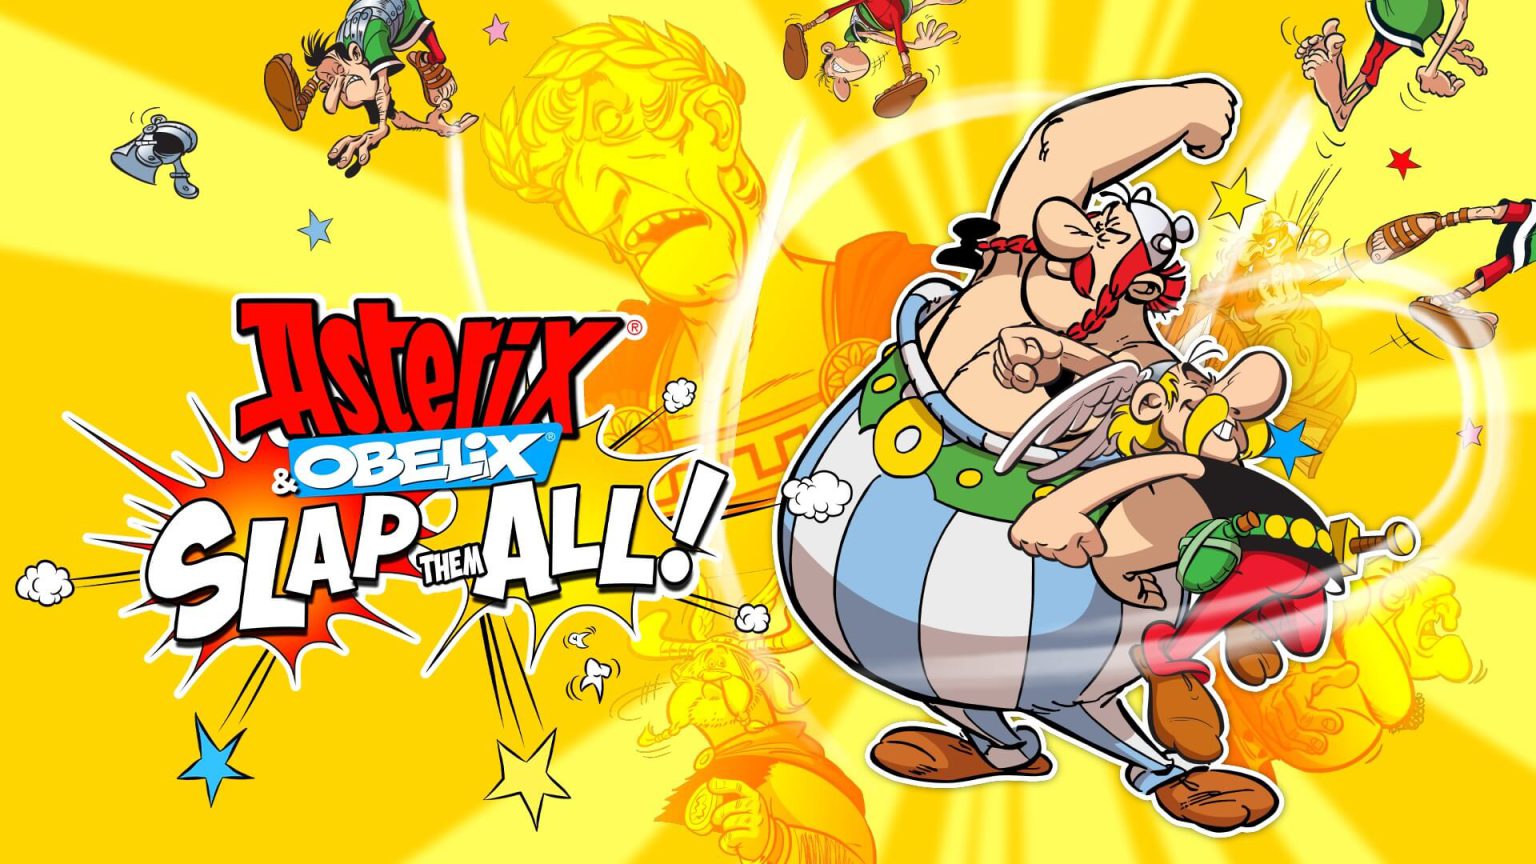 asterix and obelix slap them all - portada - generacion xbox